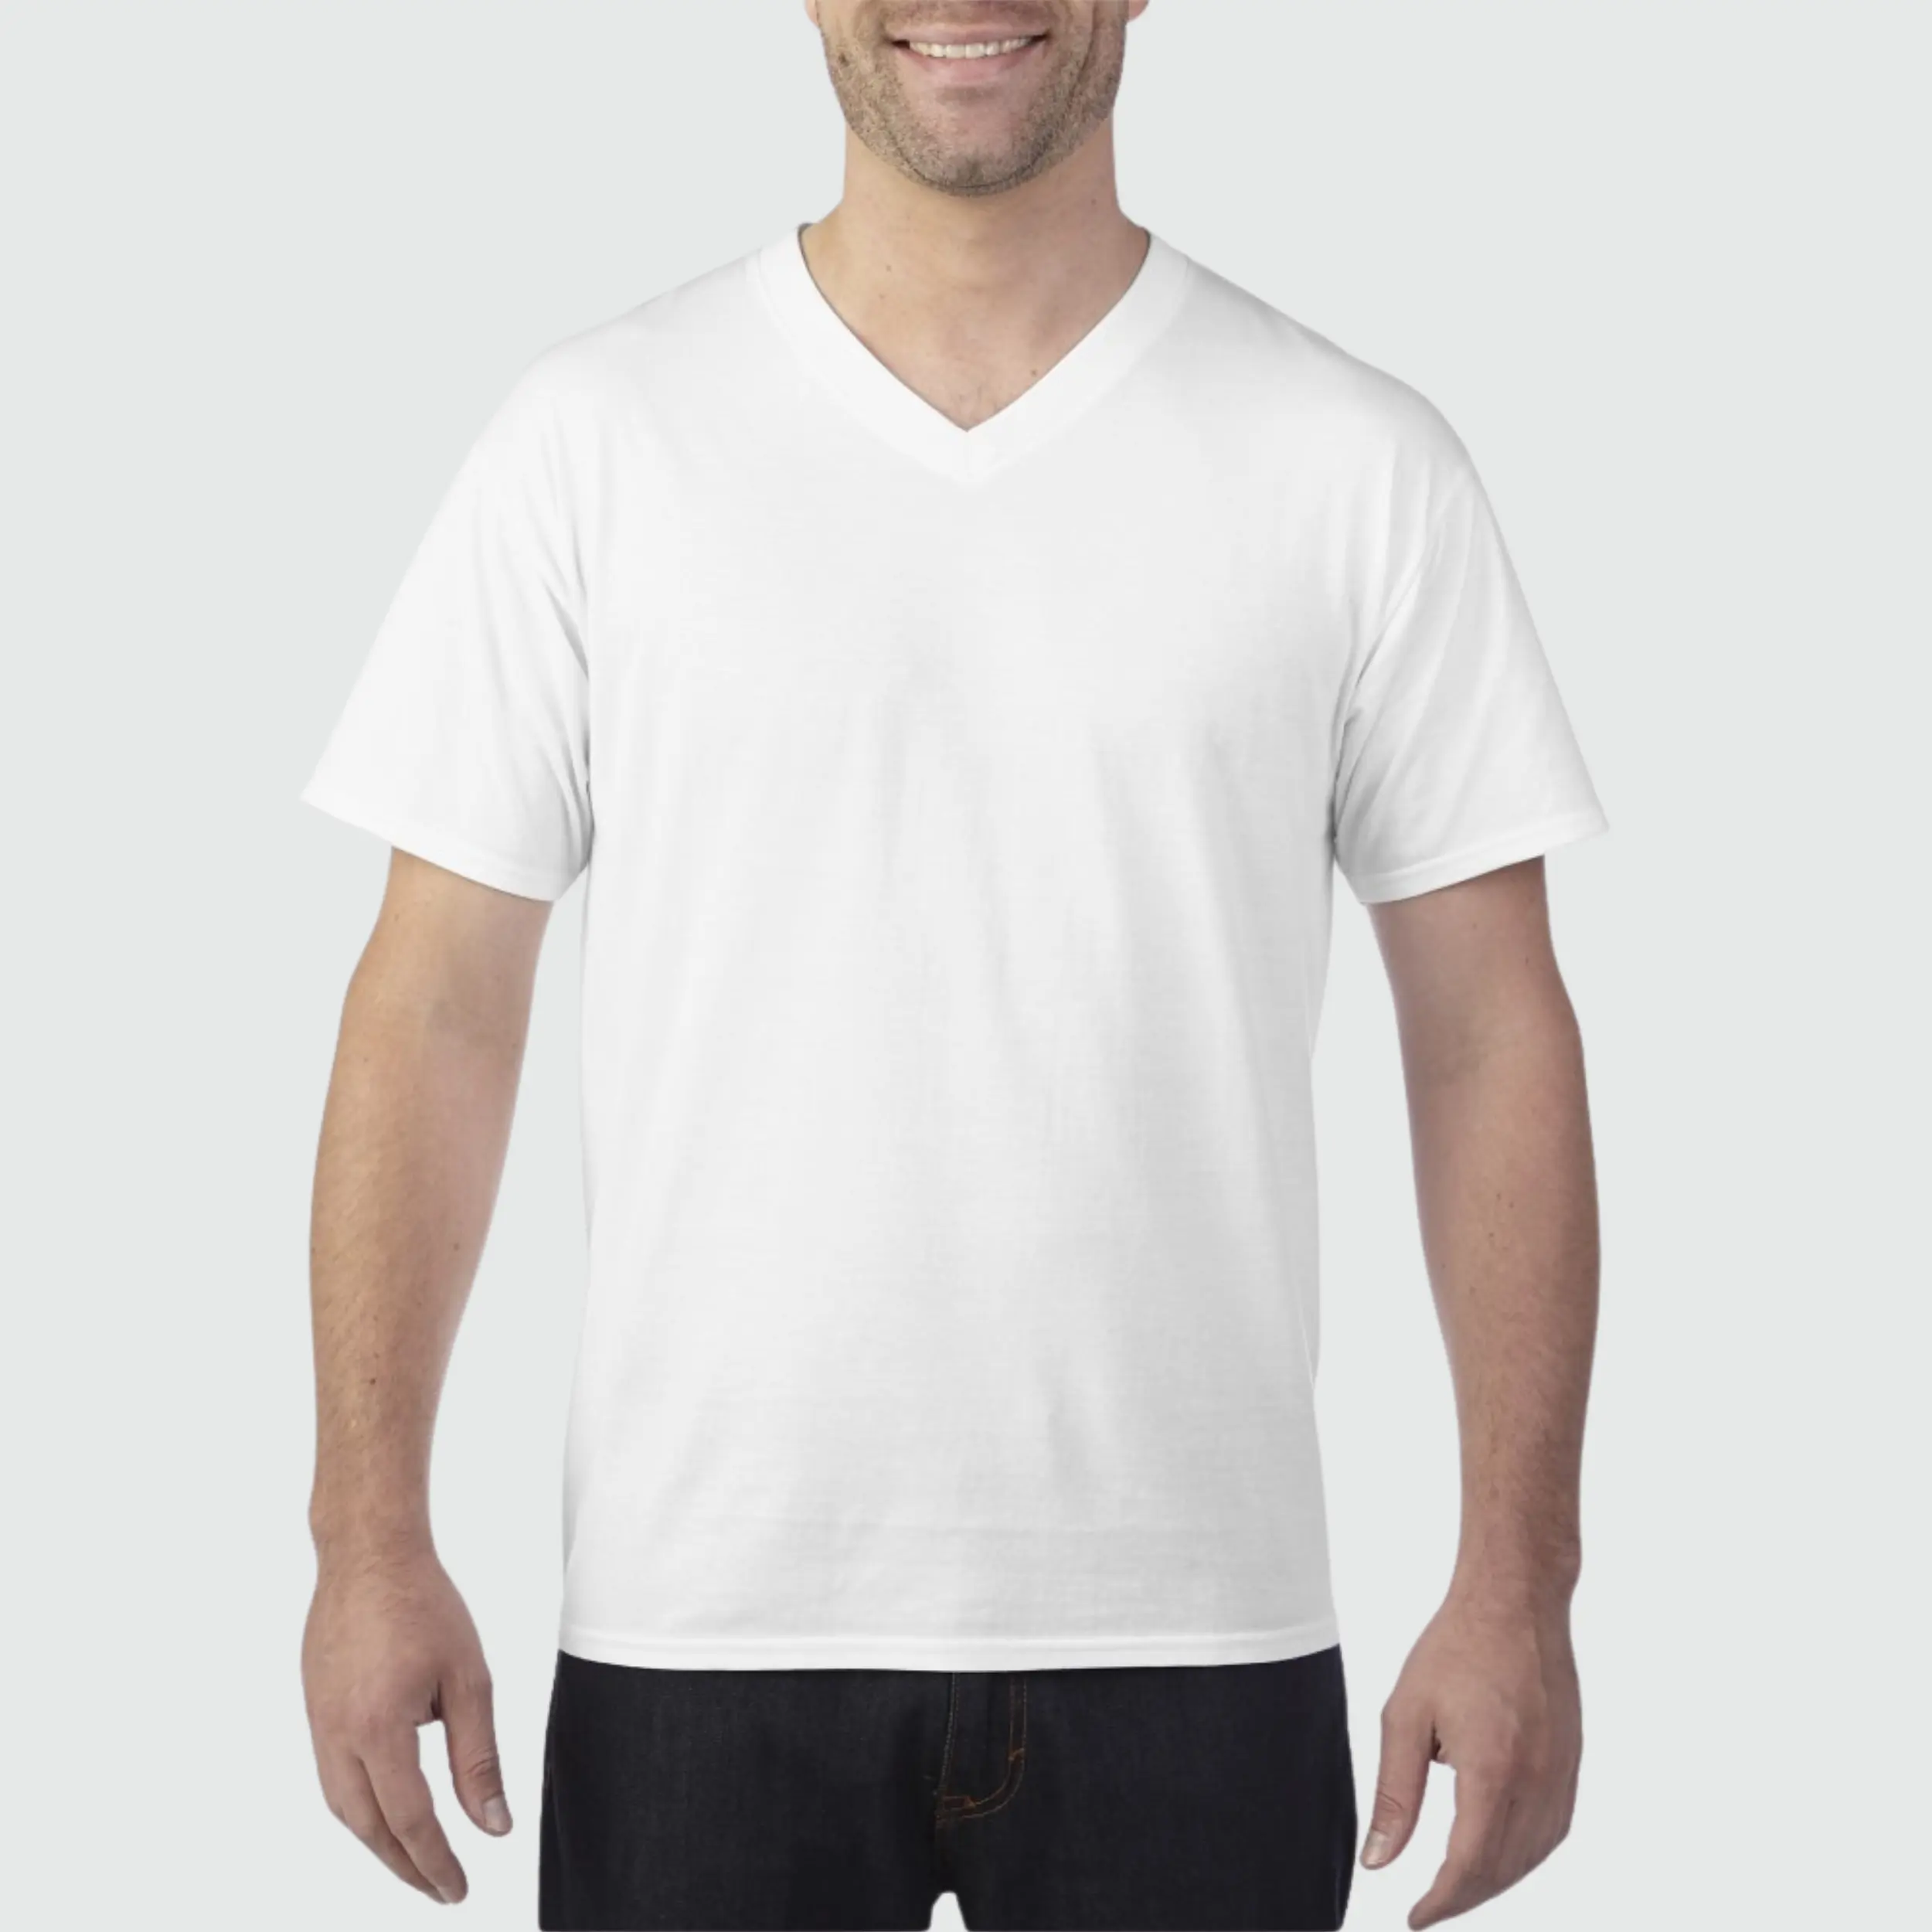 Hochwertiges V-Ausschnitt T-Shirt Herstellung V-Ausschnitt T-Shirt individuelle einfarbige einfarbige V-Ausschnitt-Hemden